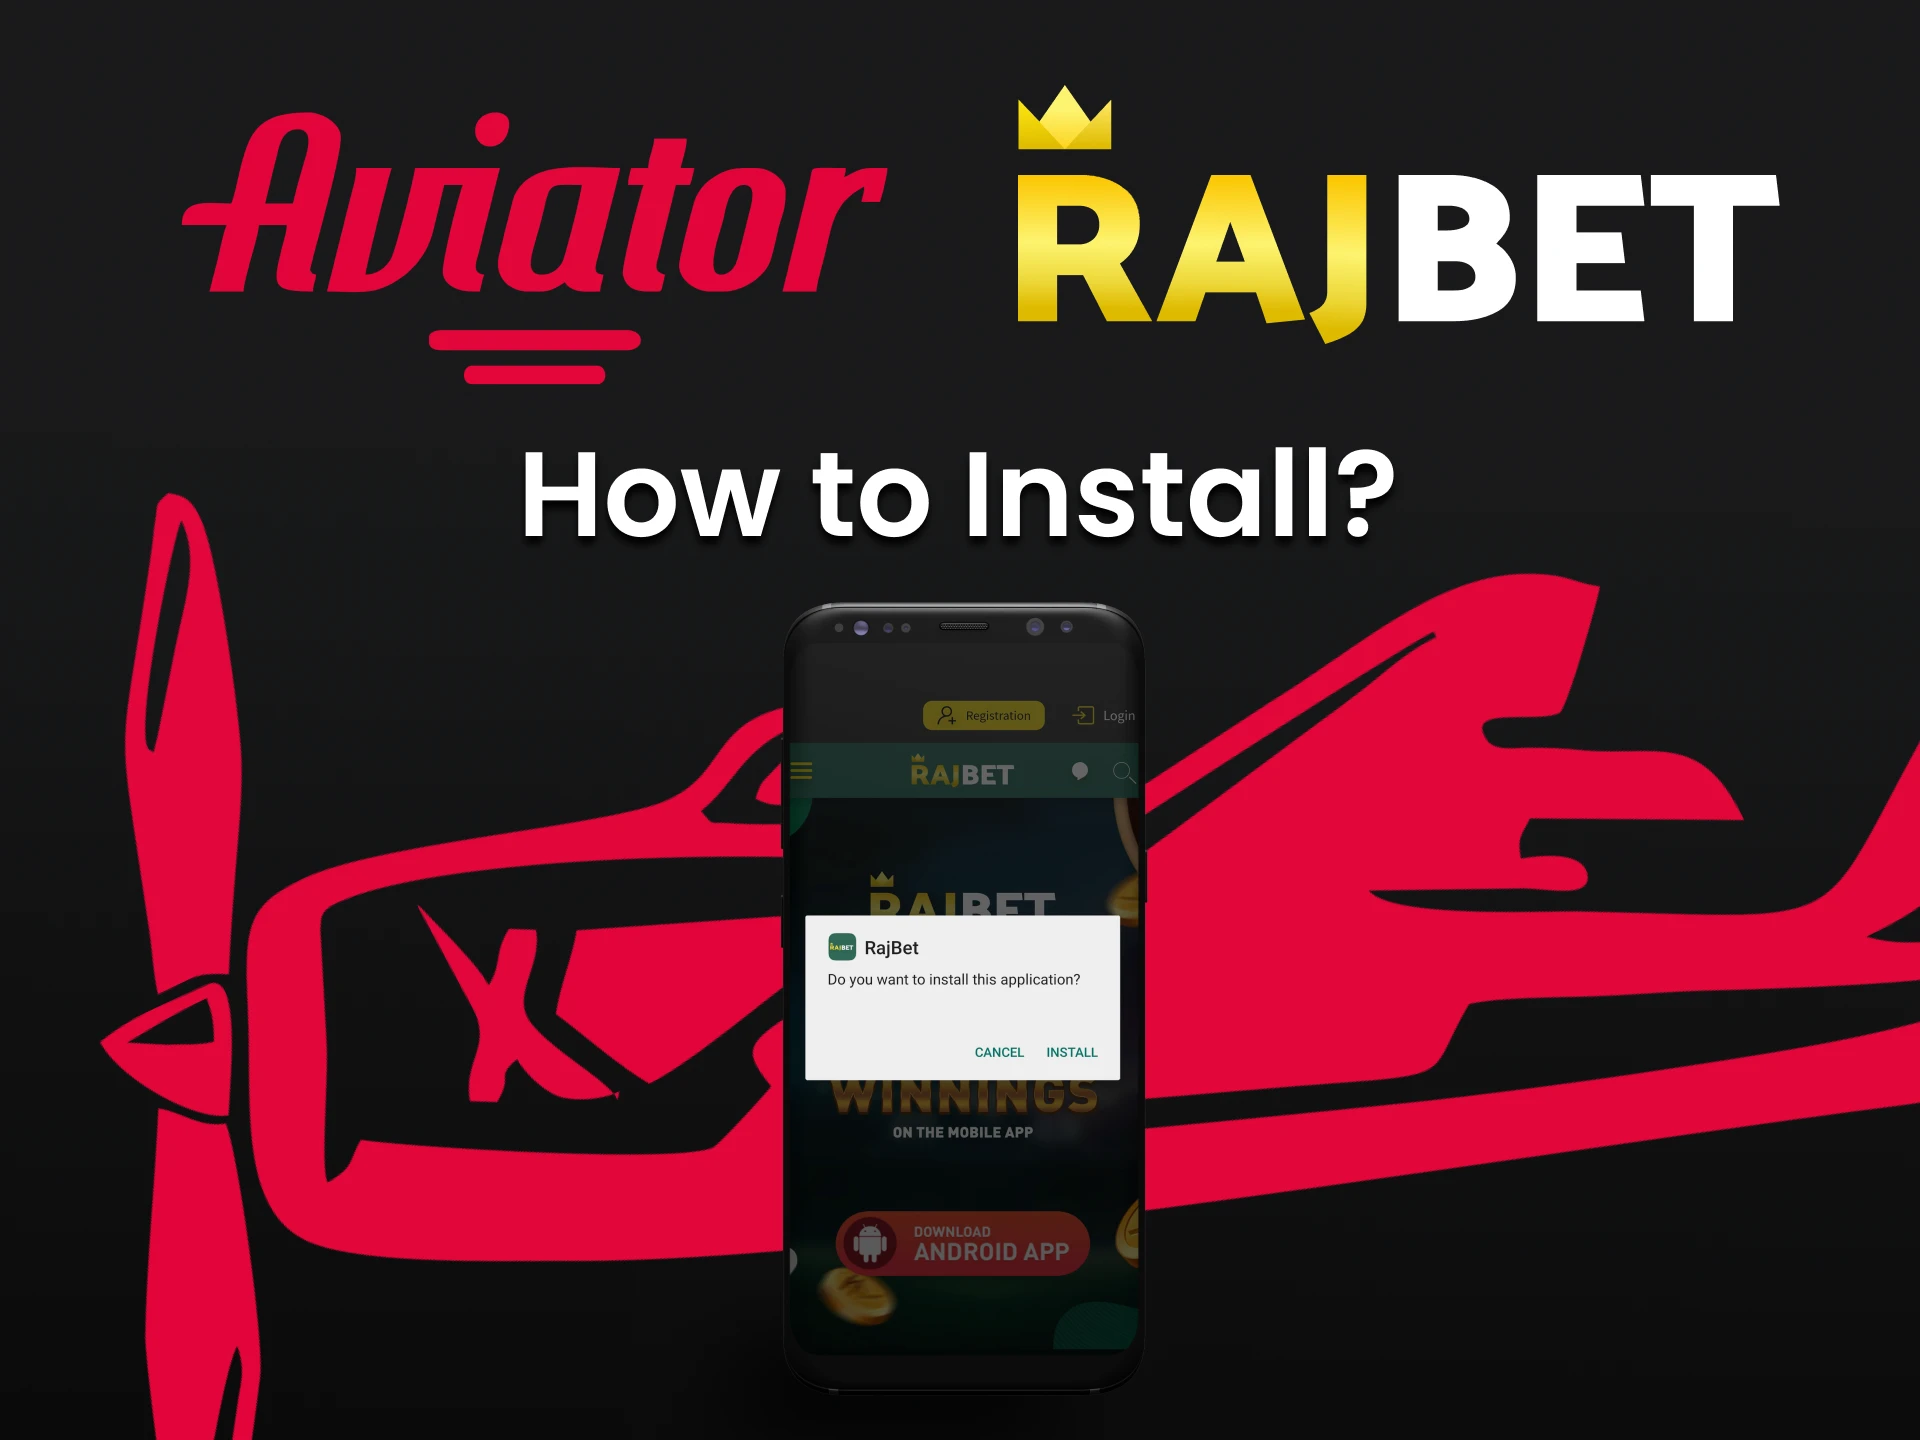 Instale o aplicativo Rajbet e comece a jogar Aviator.